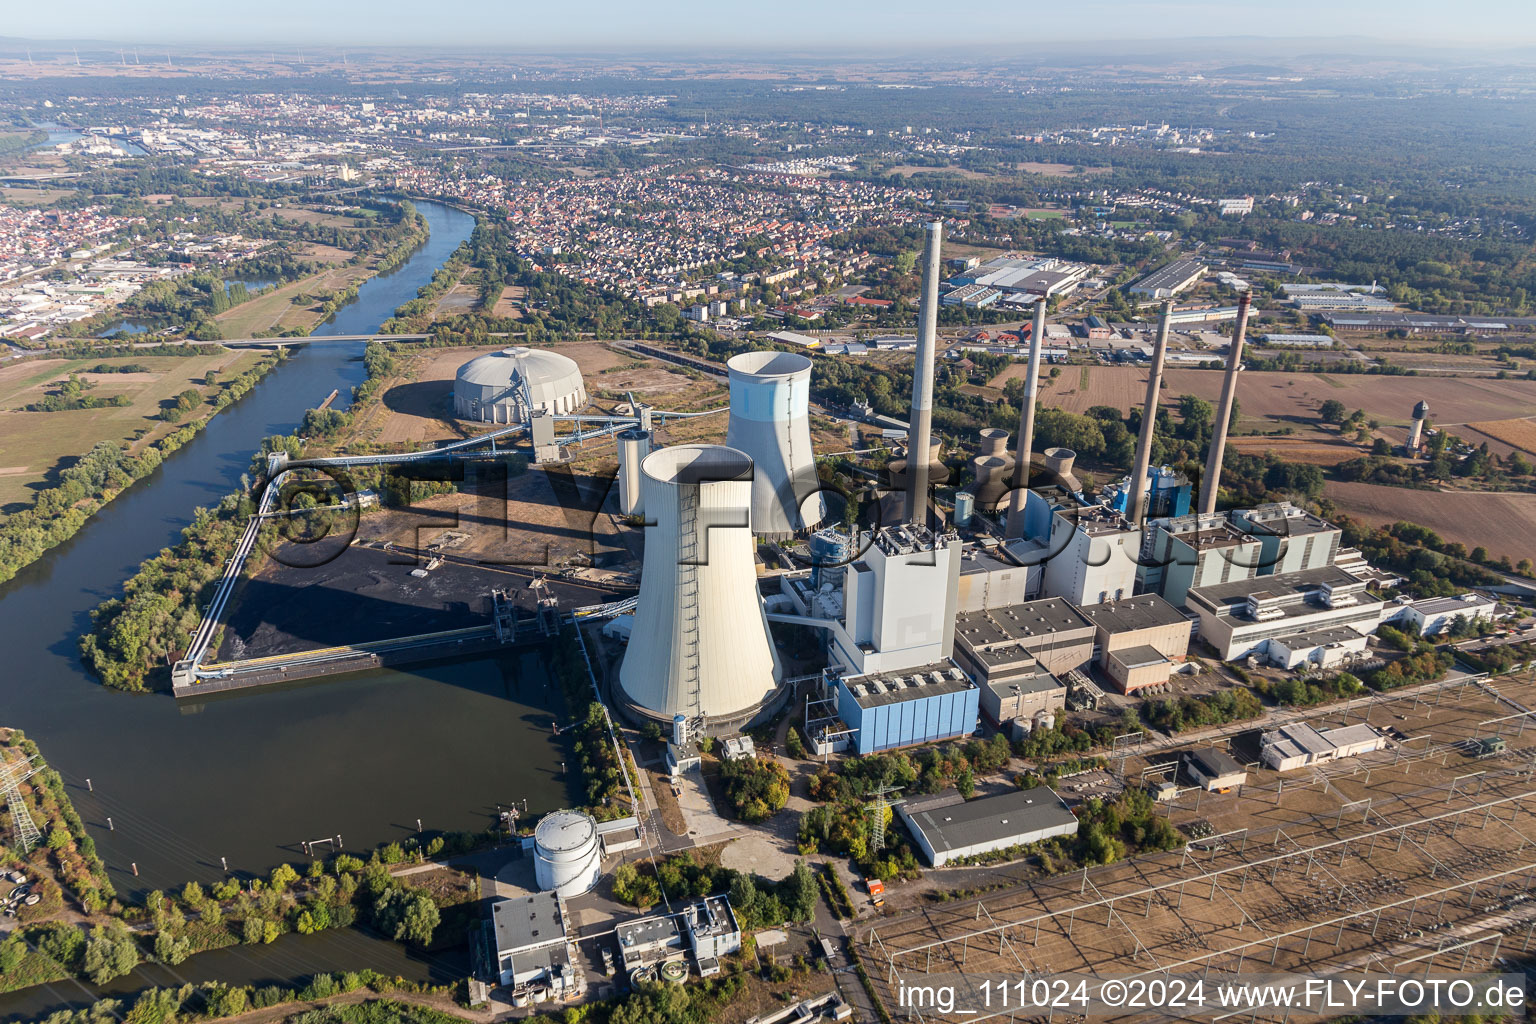 Luftbild von Großkrotzenburg, Kohle- und Gaskraftwerk Staudinger am Main bei Hanau in Großkrotzenburg im Bundesland Hessen, Deutschland